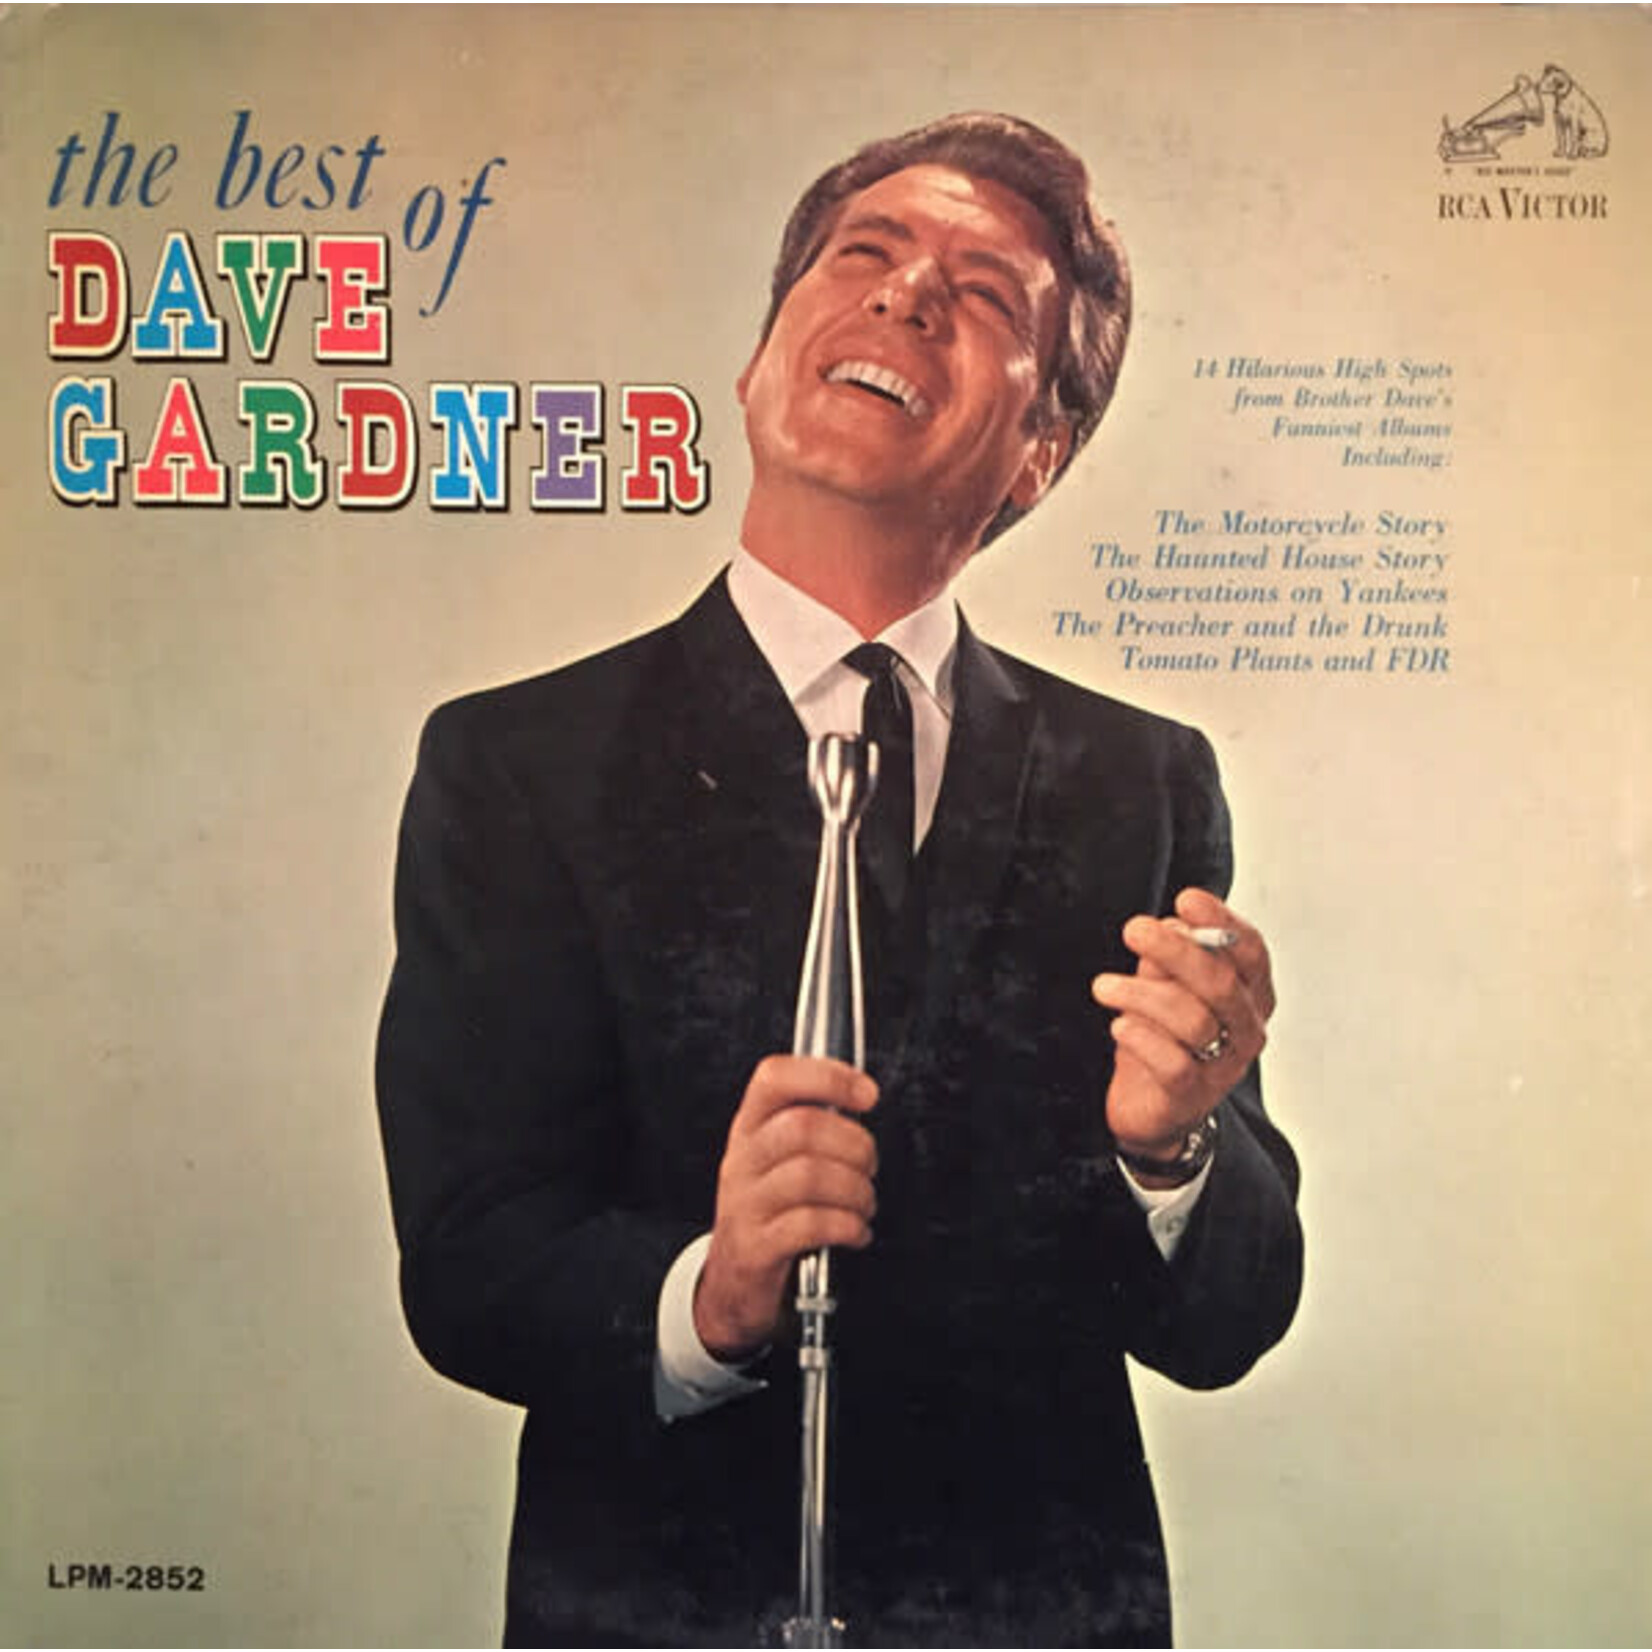 Dave Gardner – The Best Of Dave Gardner (G+, 1964, LP, RCA Victor – LPM-2852)